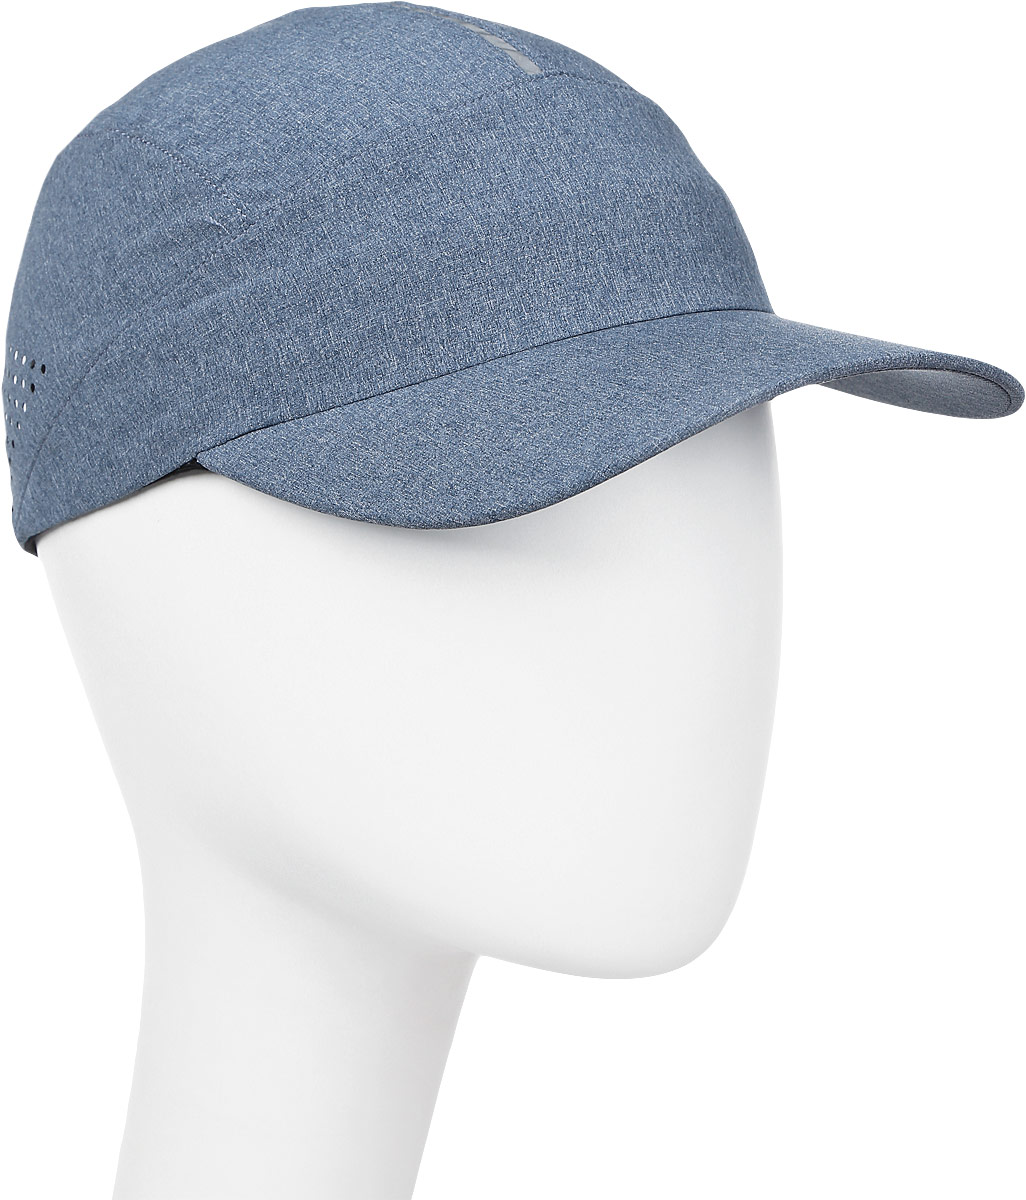 Бейсболка мужская Asics Running Cap, цвет: синий. 155010-0793. Размер 58